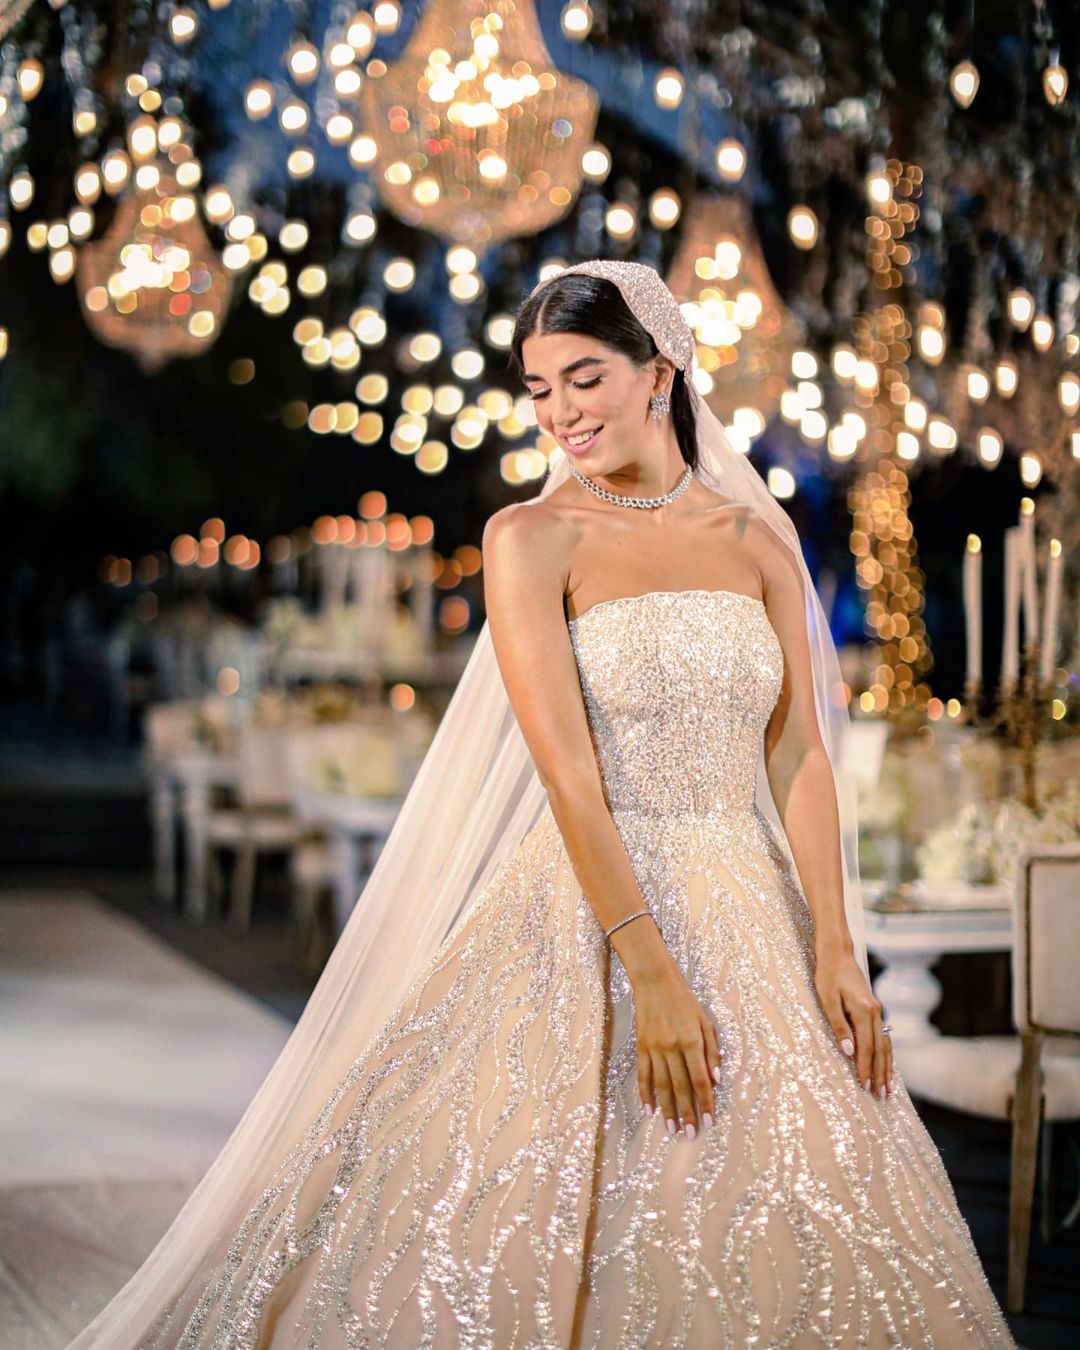 حفل زفاف ابنة النائب اللبناني نوار الساحلي